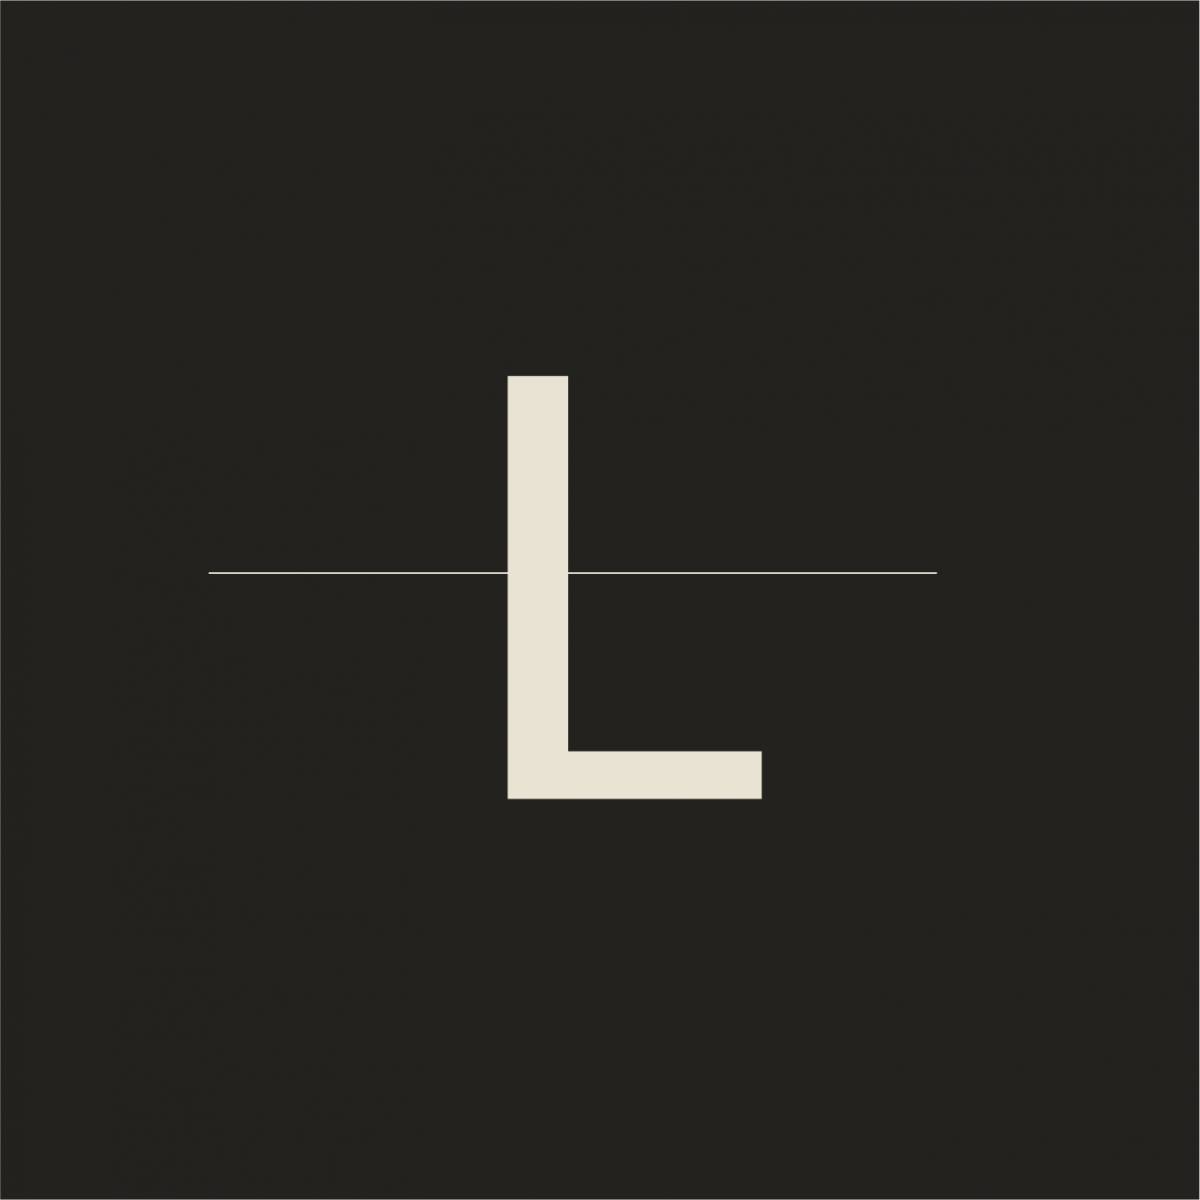 Linear Digital Agency - Arraiolos - Design de Logotipos